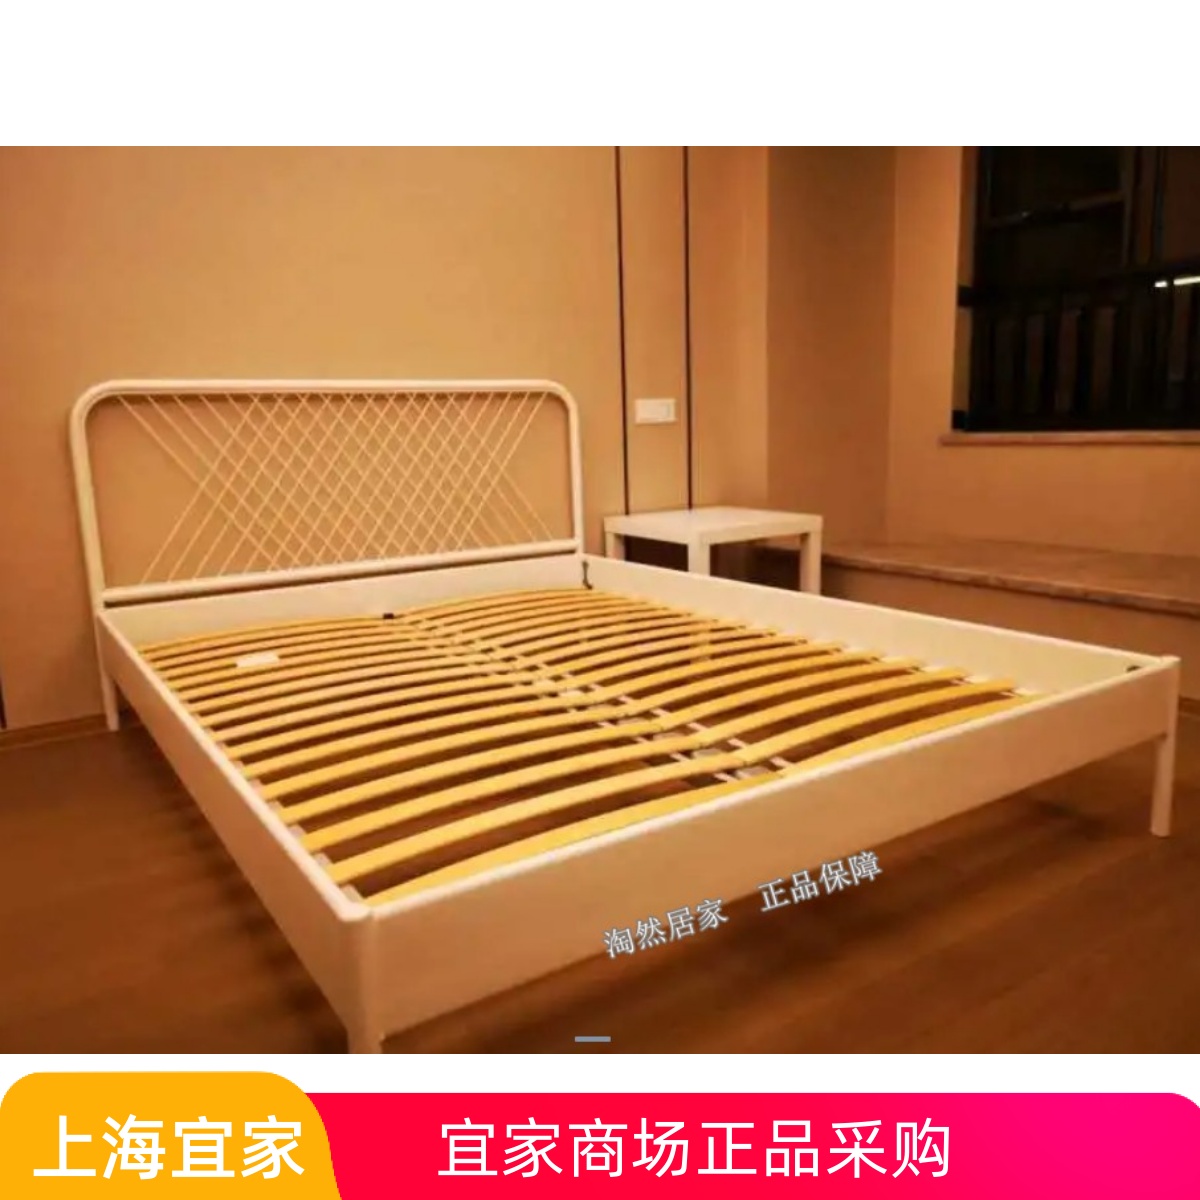 IKEA宜家 奈斯顿 床架铁艺床双人床铁床现代简约加厚加固代购